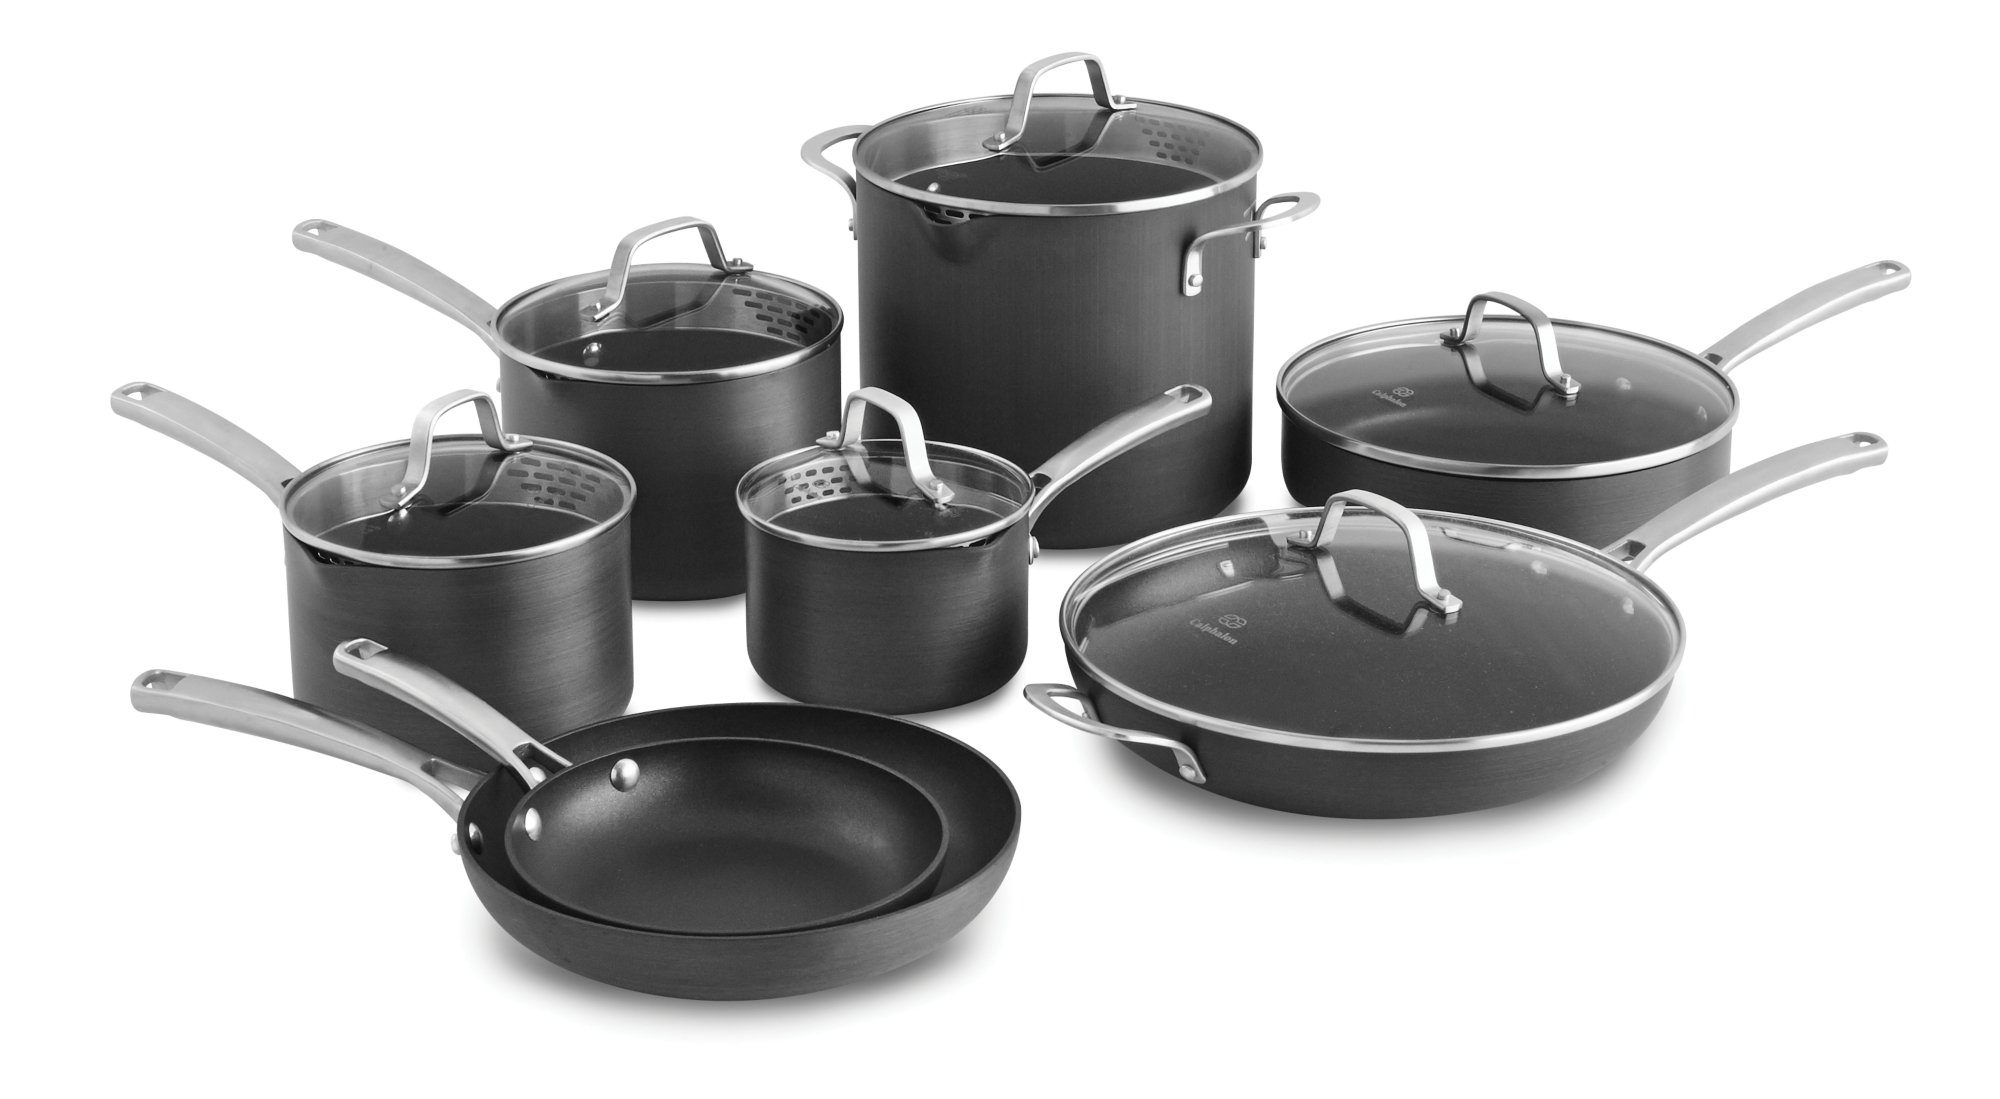  Cookware Sets Pots and Pans Sets 